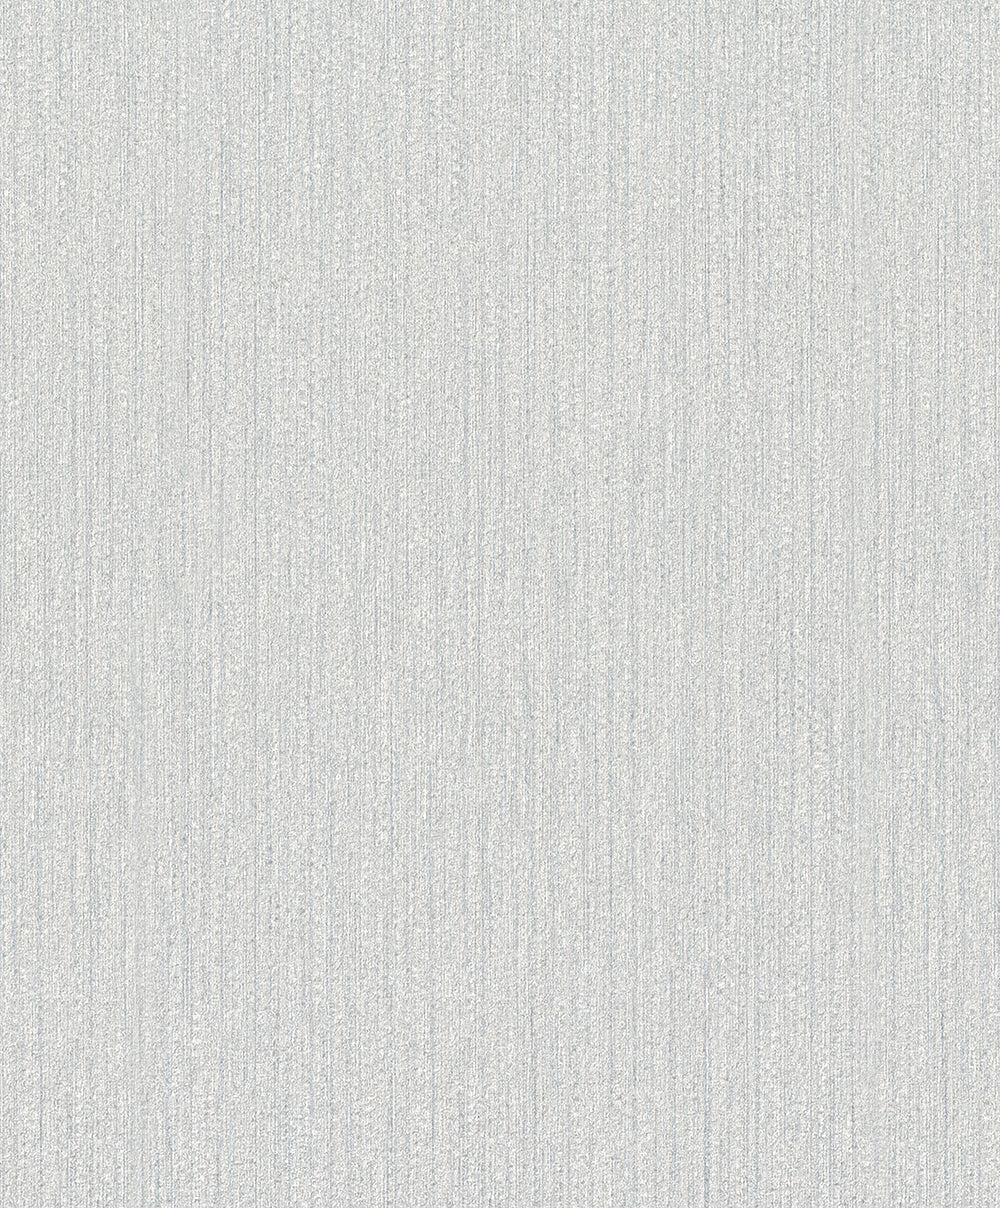 Schoner Wohnen New Spirit - Ambient bamboo weave plain wallpaper Marburg Roll Silver  32742